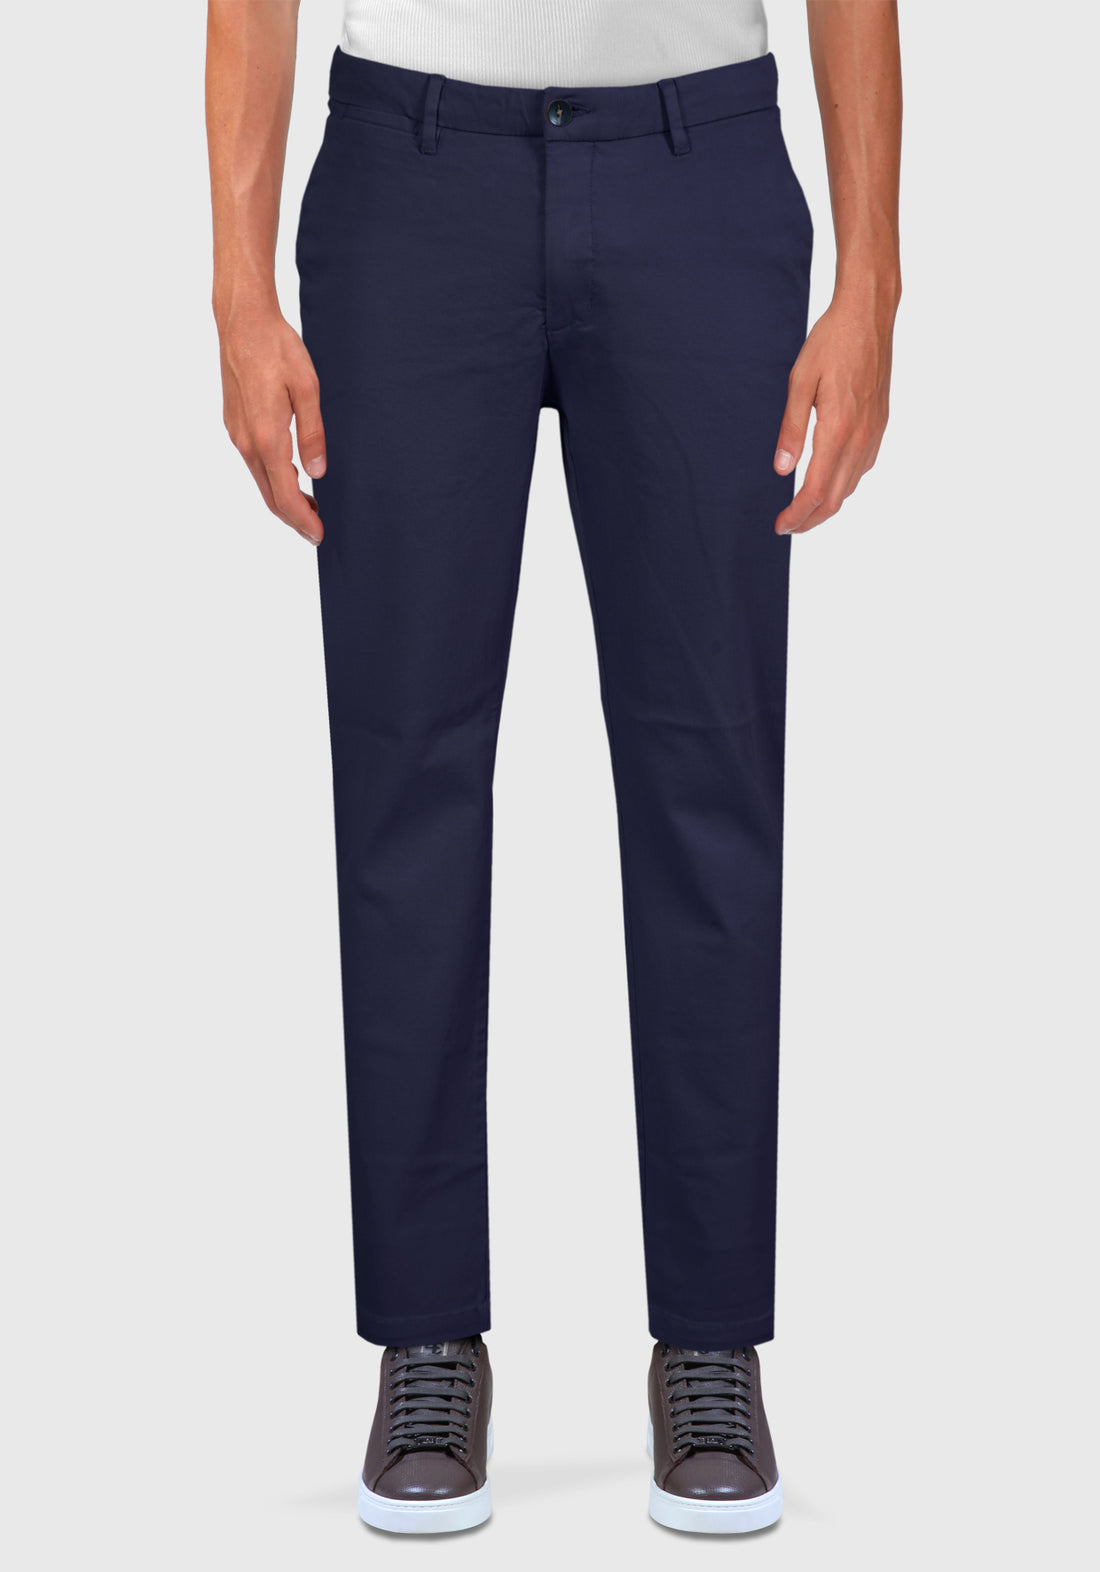 Pantalone Tasca America cotone Caldo Armaturato - Blue